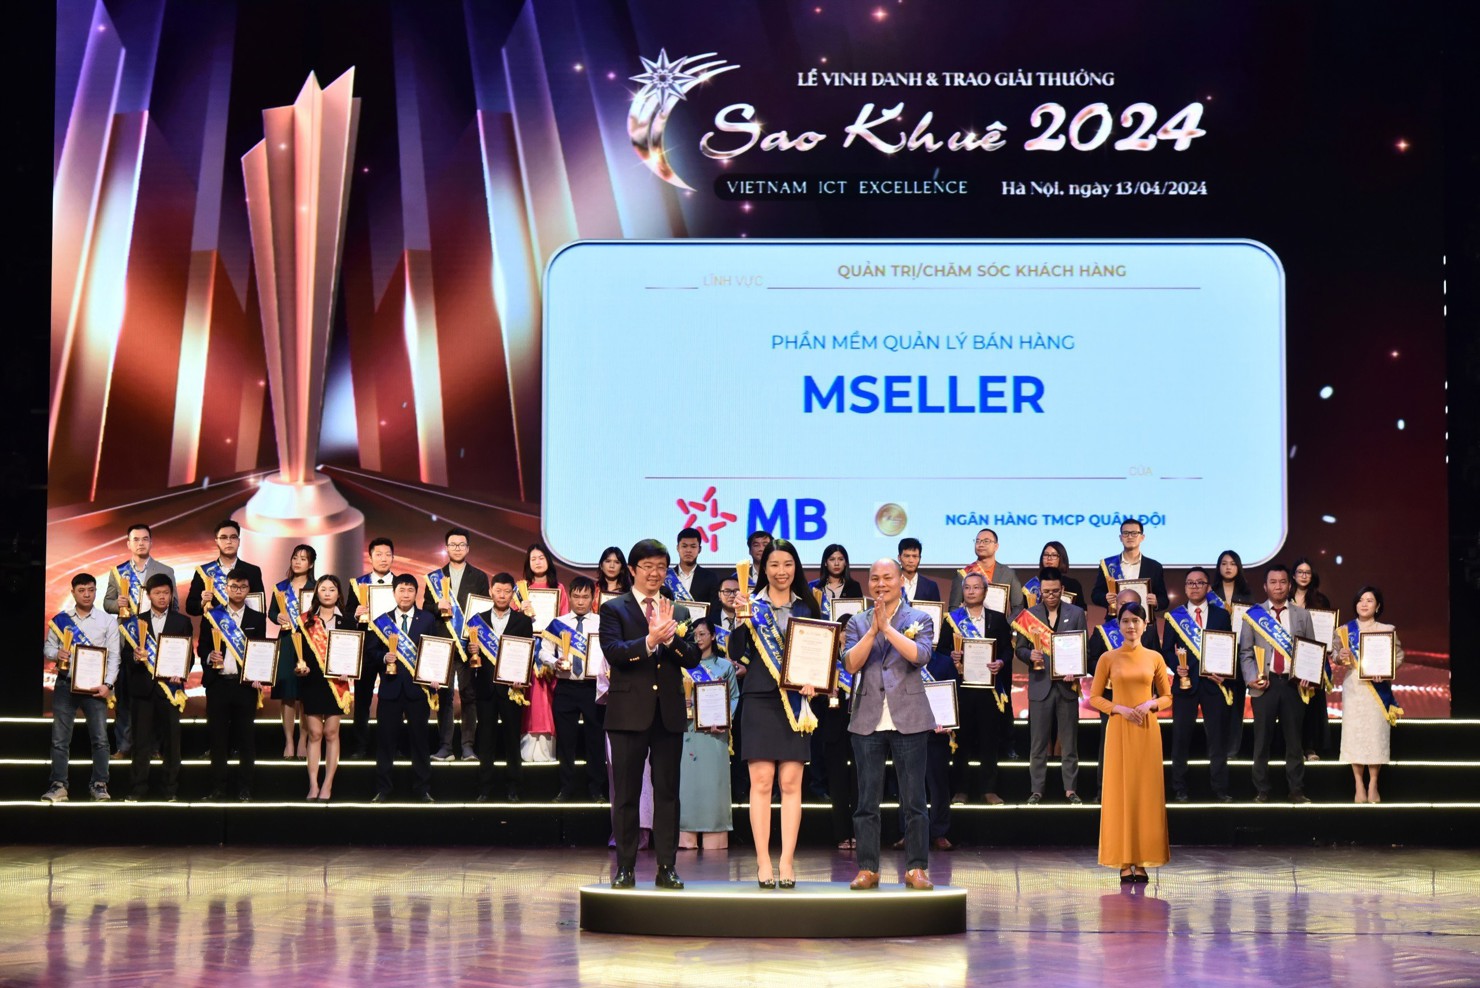 Đại diện lãnh đạo MB nhận giải Sao Khuê 2024.